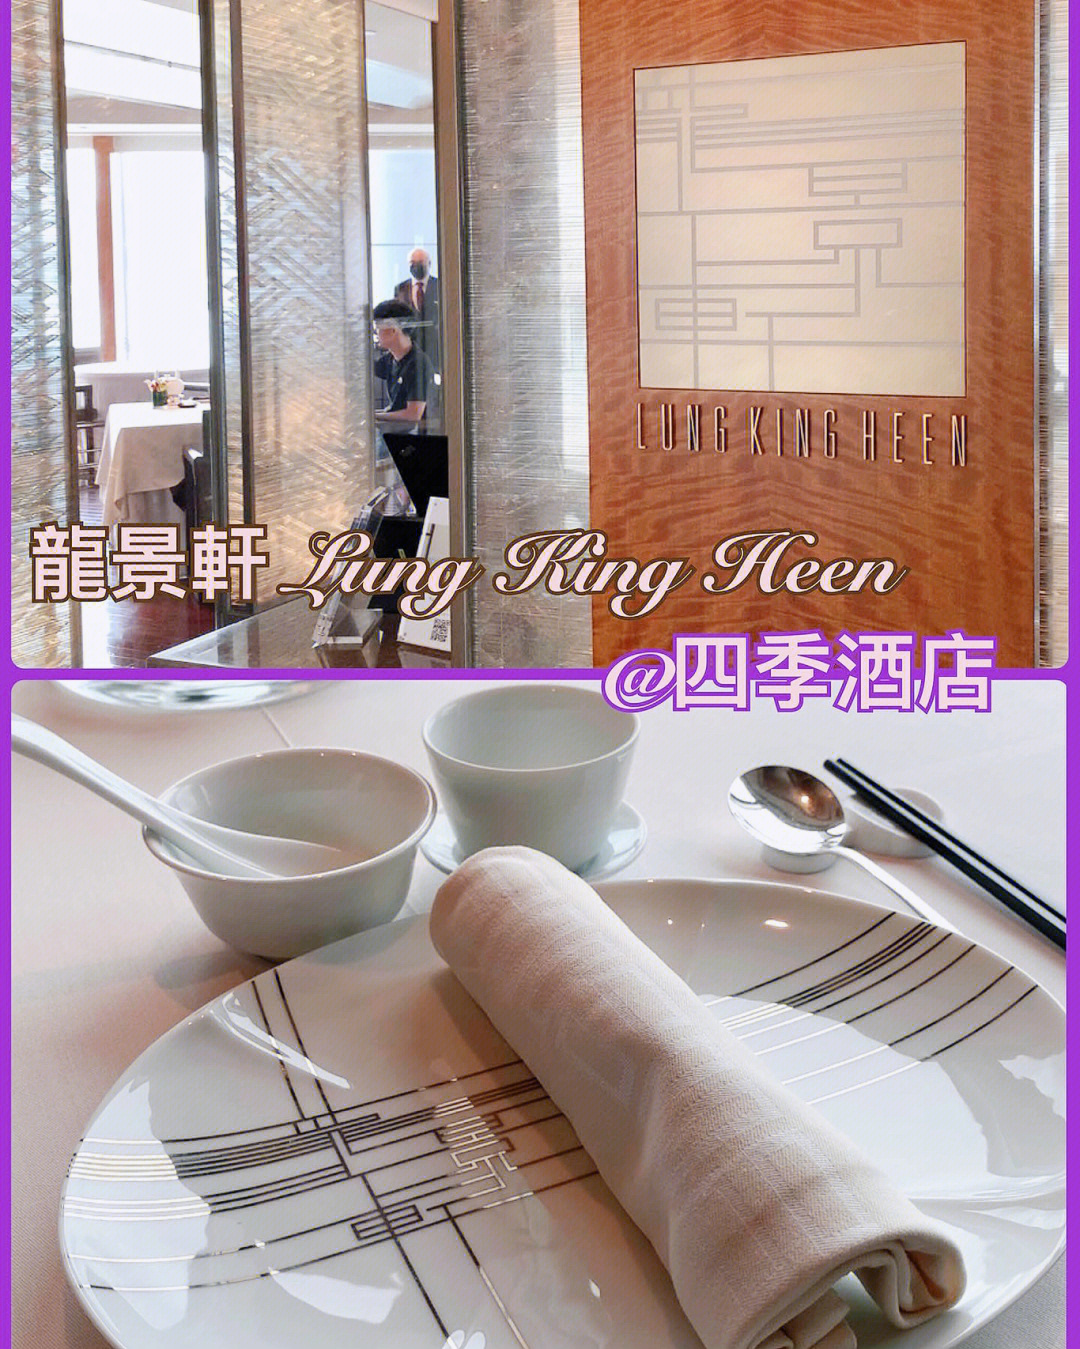 上海龙景轩大酒店地址图片